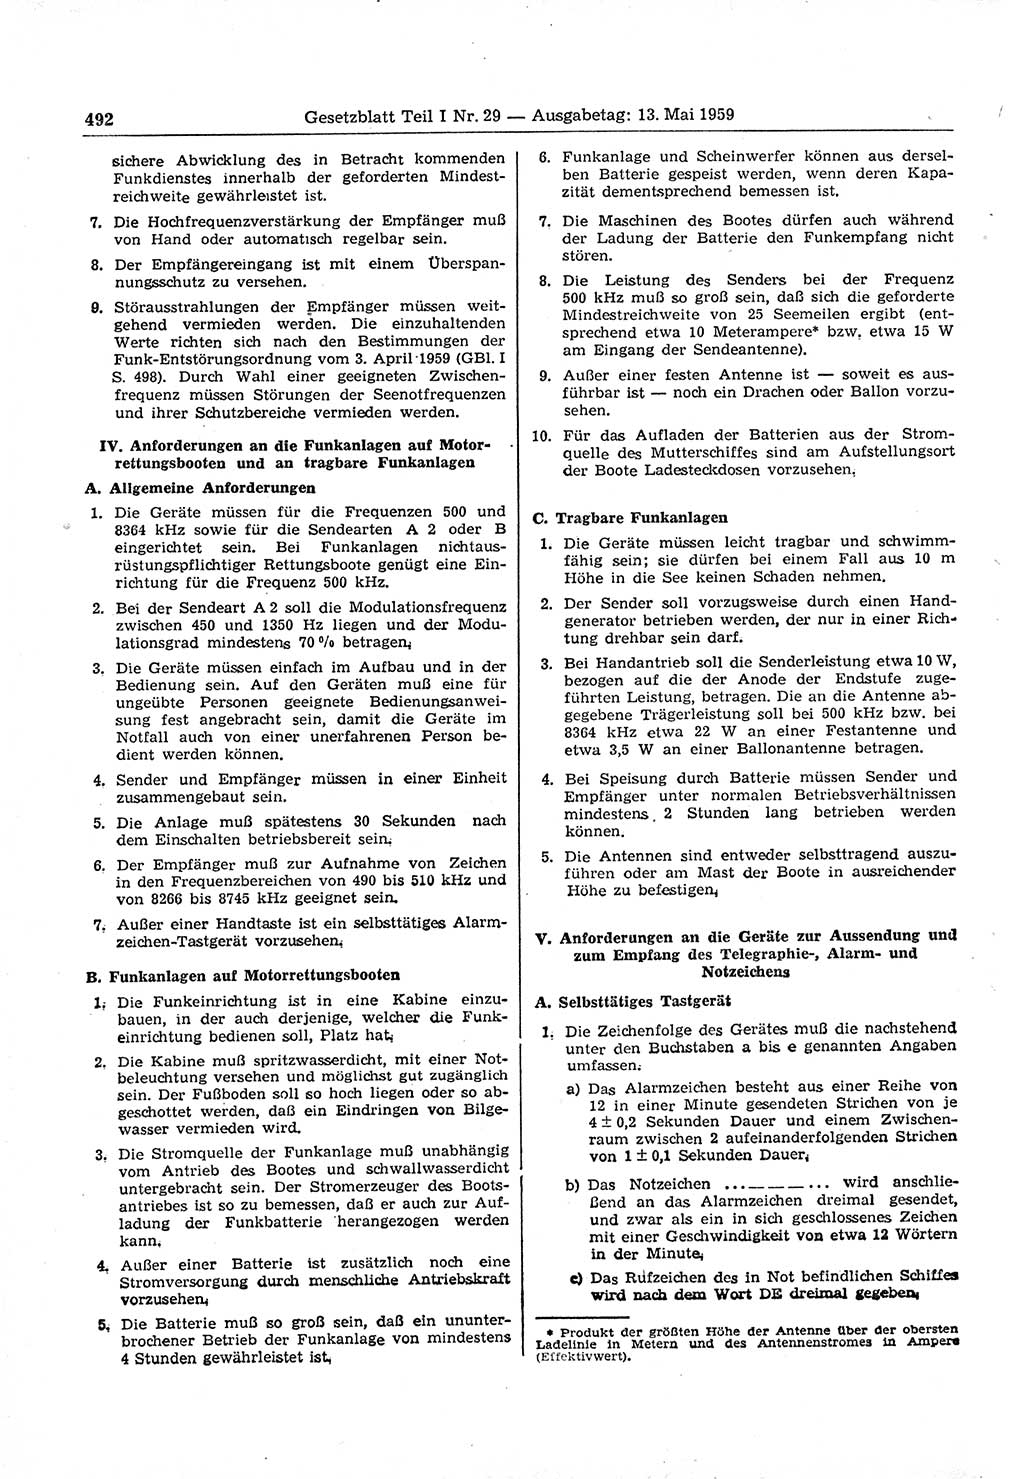 Gesetzblatt (GBl.) der Deutschen Demokratischen Republik (DDR) Teil Ⅰ 1959, Seite 492 (GBl. DDR Ⅰ 1959, S. 492)